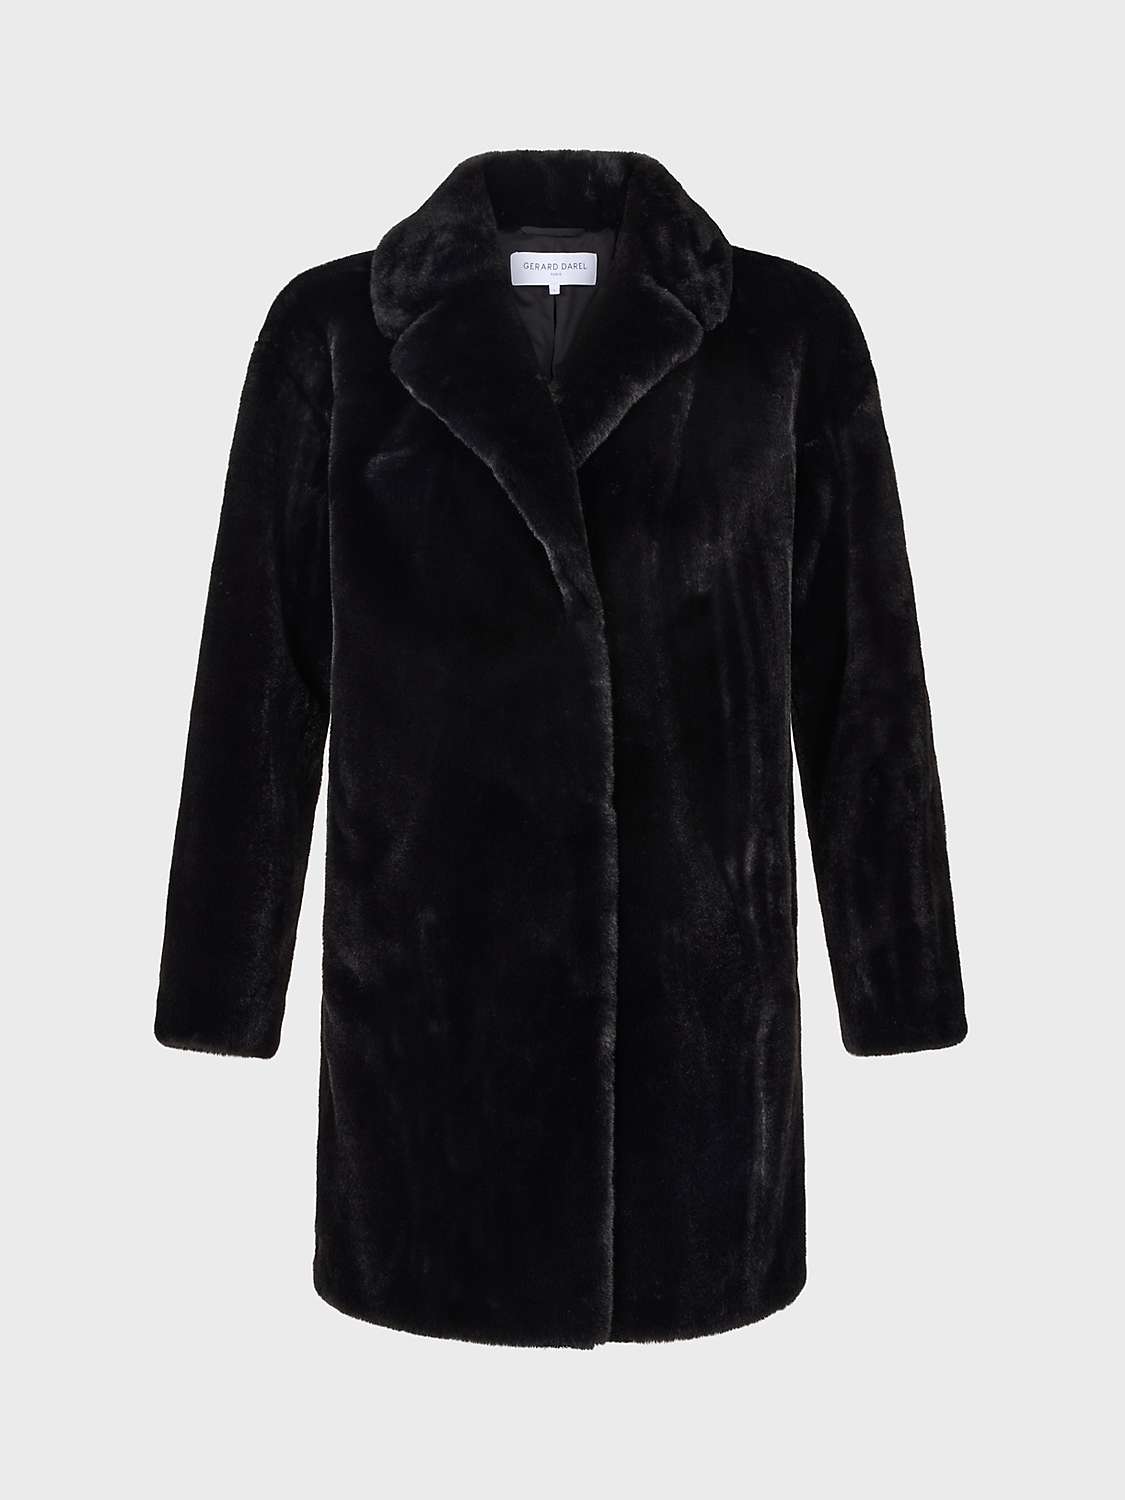 Gerard Darel Seraphina Faux Fur Short Coat, Black at John Lewis & Partners